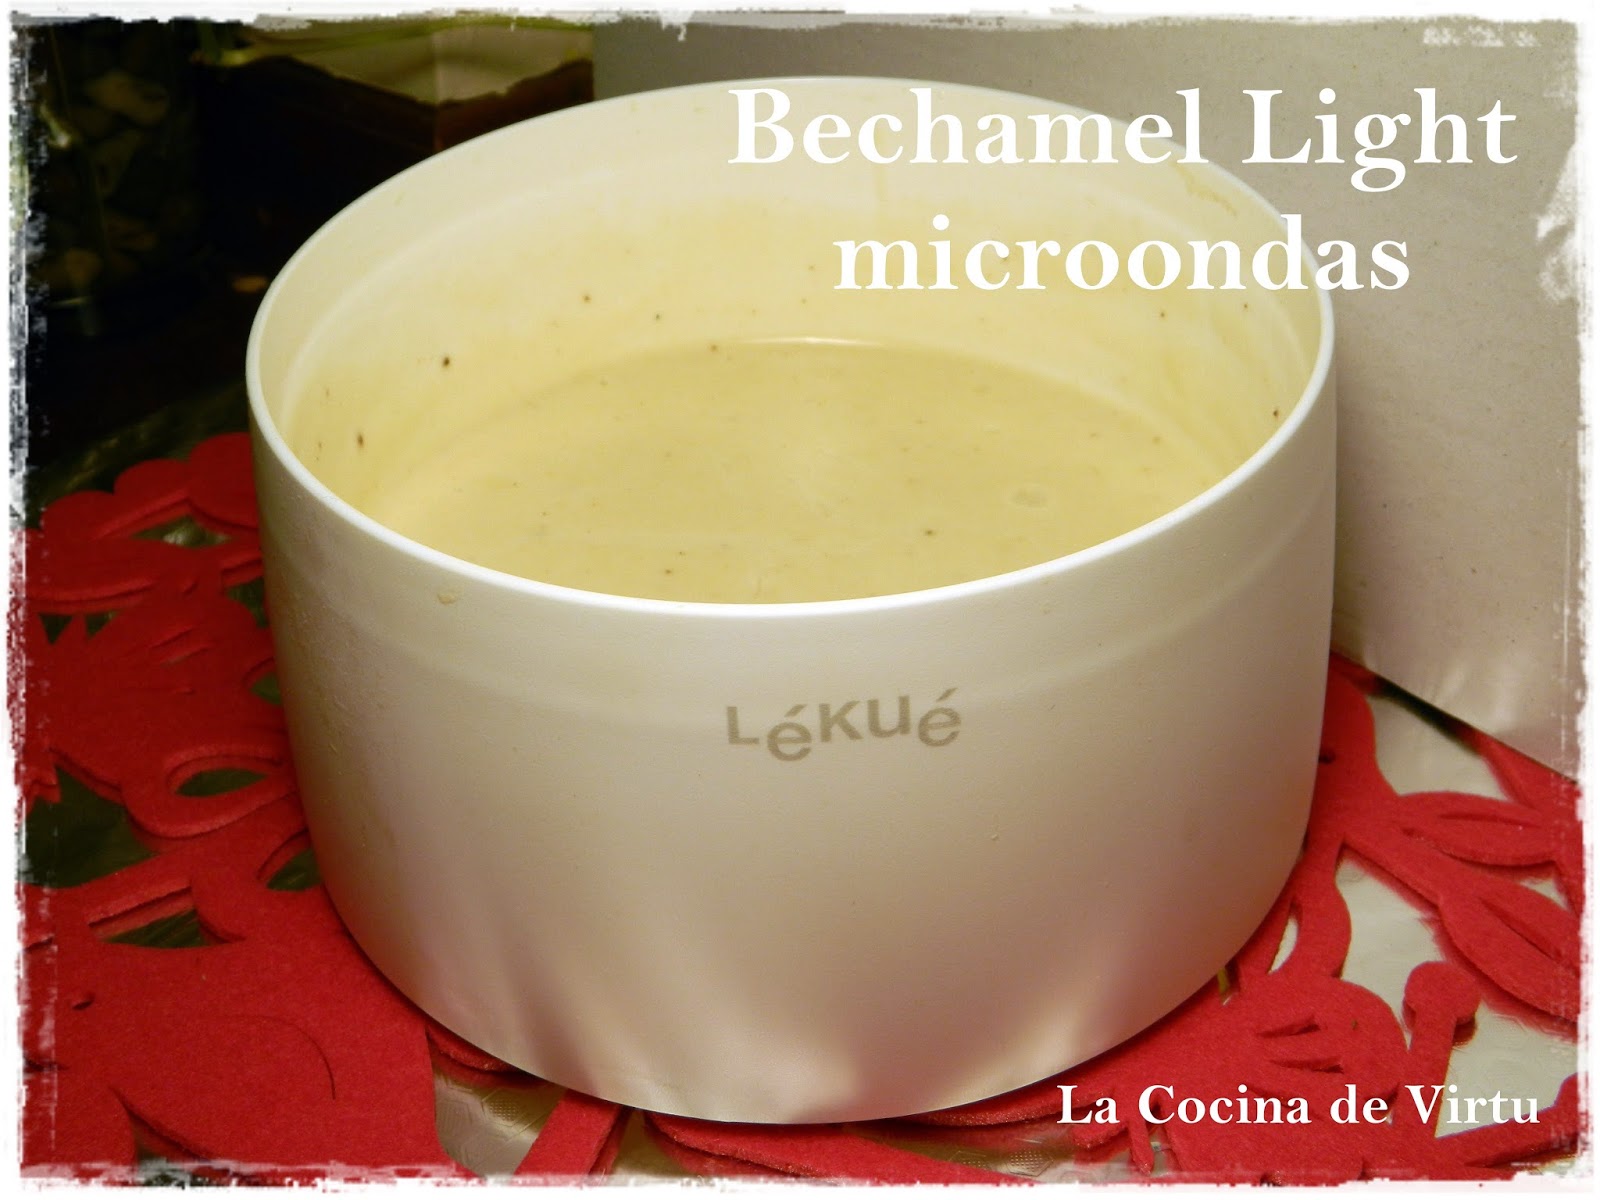 Bechamel light microondas